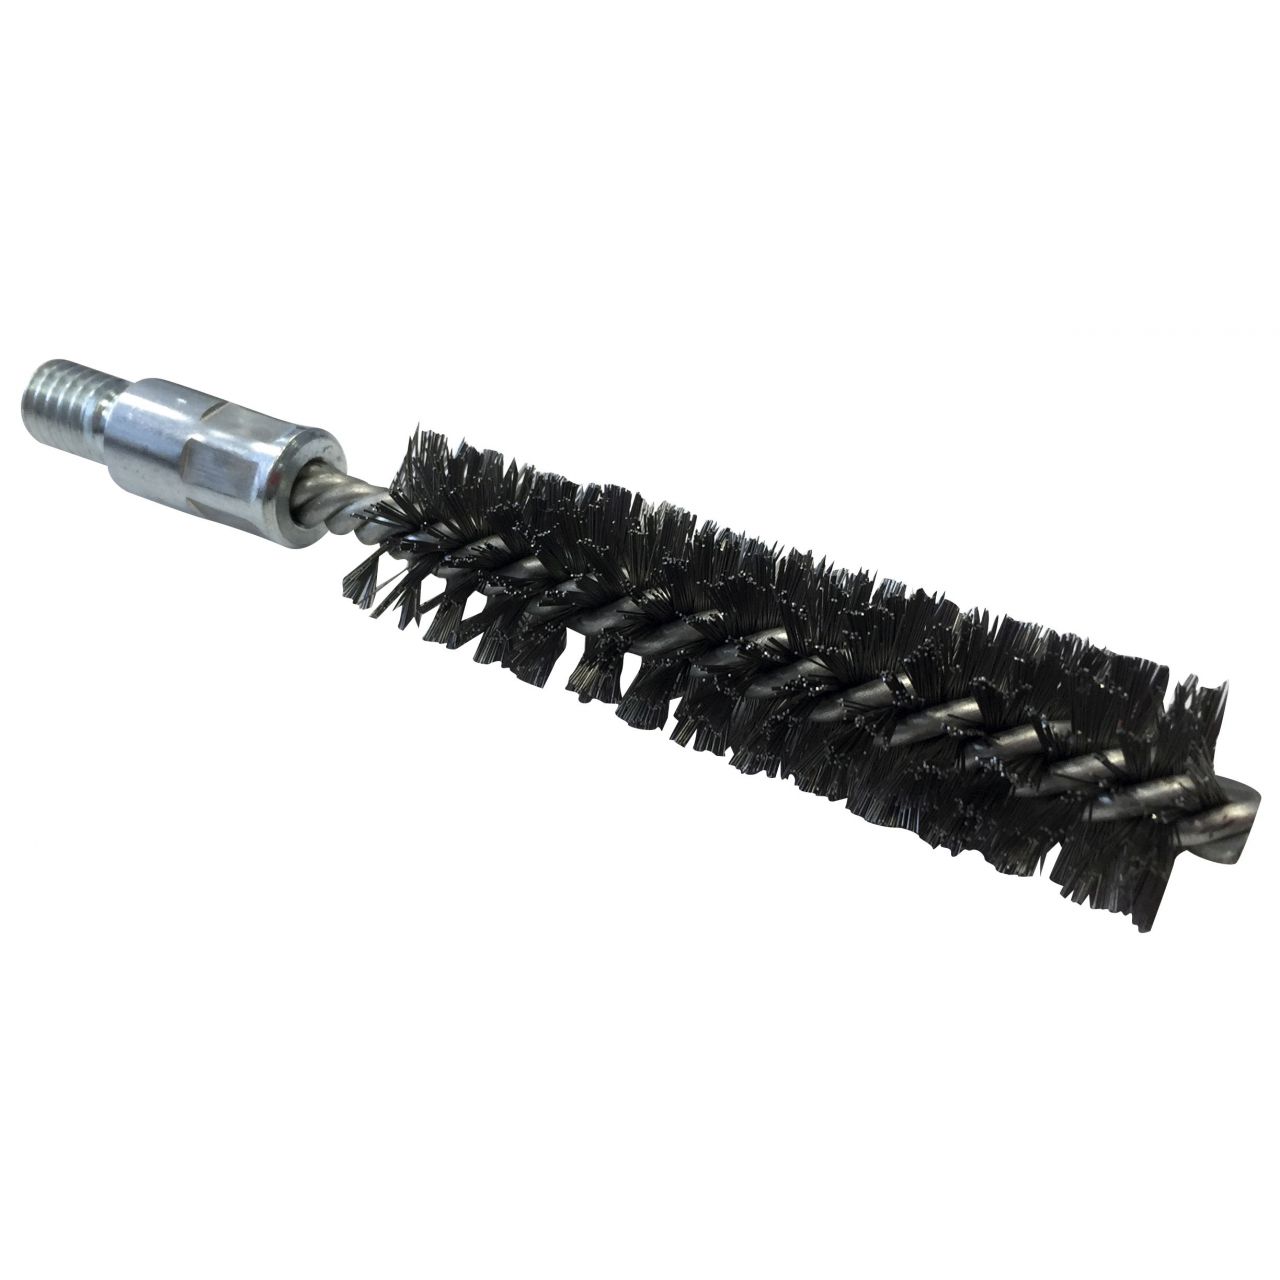 Cepillo limpiatubos de acero con rosca 5/16”BSW Ø 15 mm (100x140x0.15 mm)